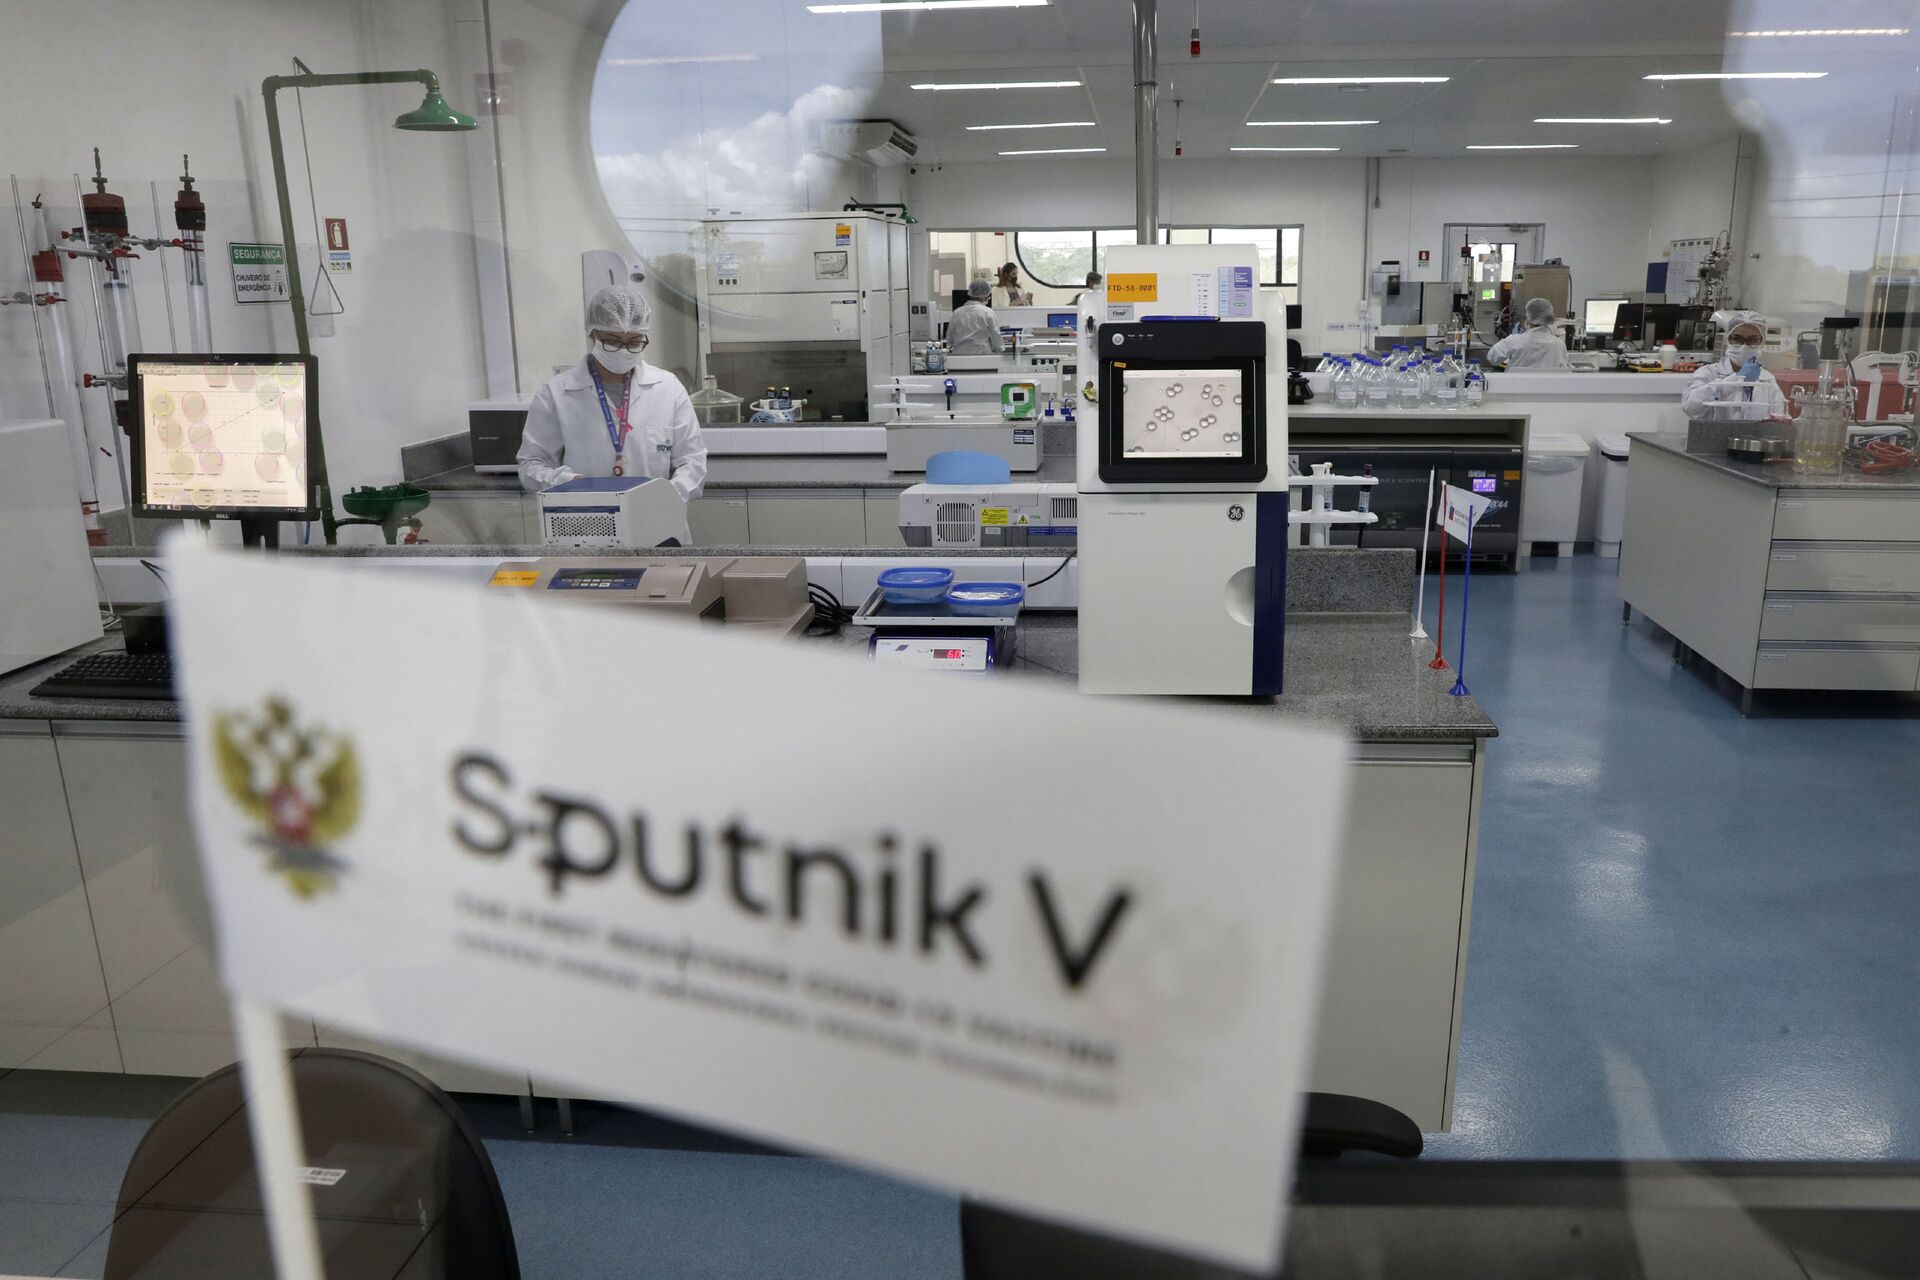 Brasil decide na sexta-feira sobre compra de 30 milhões de doses da Sputnik V e da Covaxin - Sputnik Brasil, 1920, 03.02.2021